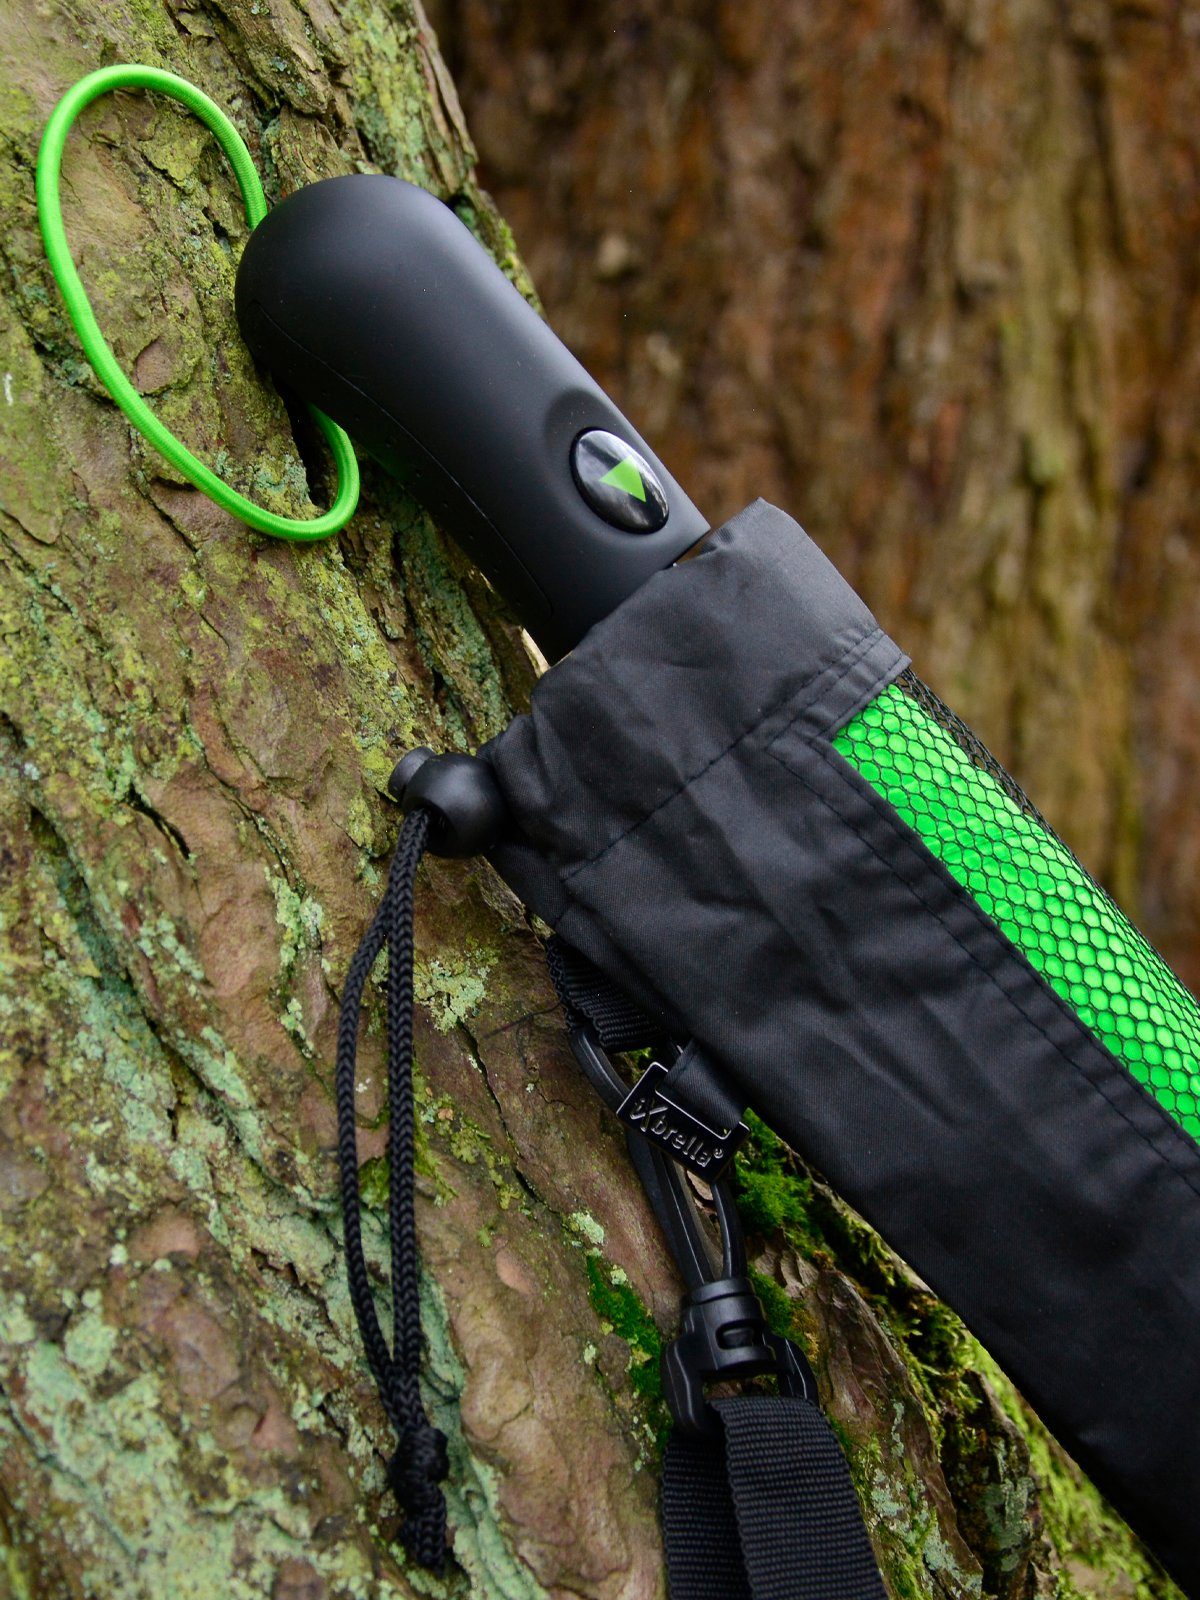 mit Dach-Durchmesser Umhängetasche, mit Trekking riesigem iX-brella neon-grün 124cm XXL Taschenregenschirm Golf-Taschenschirm